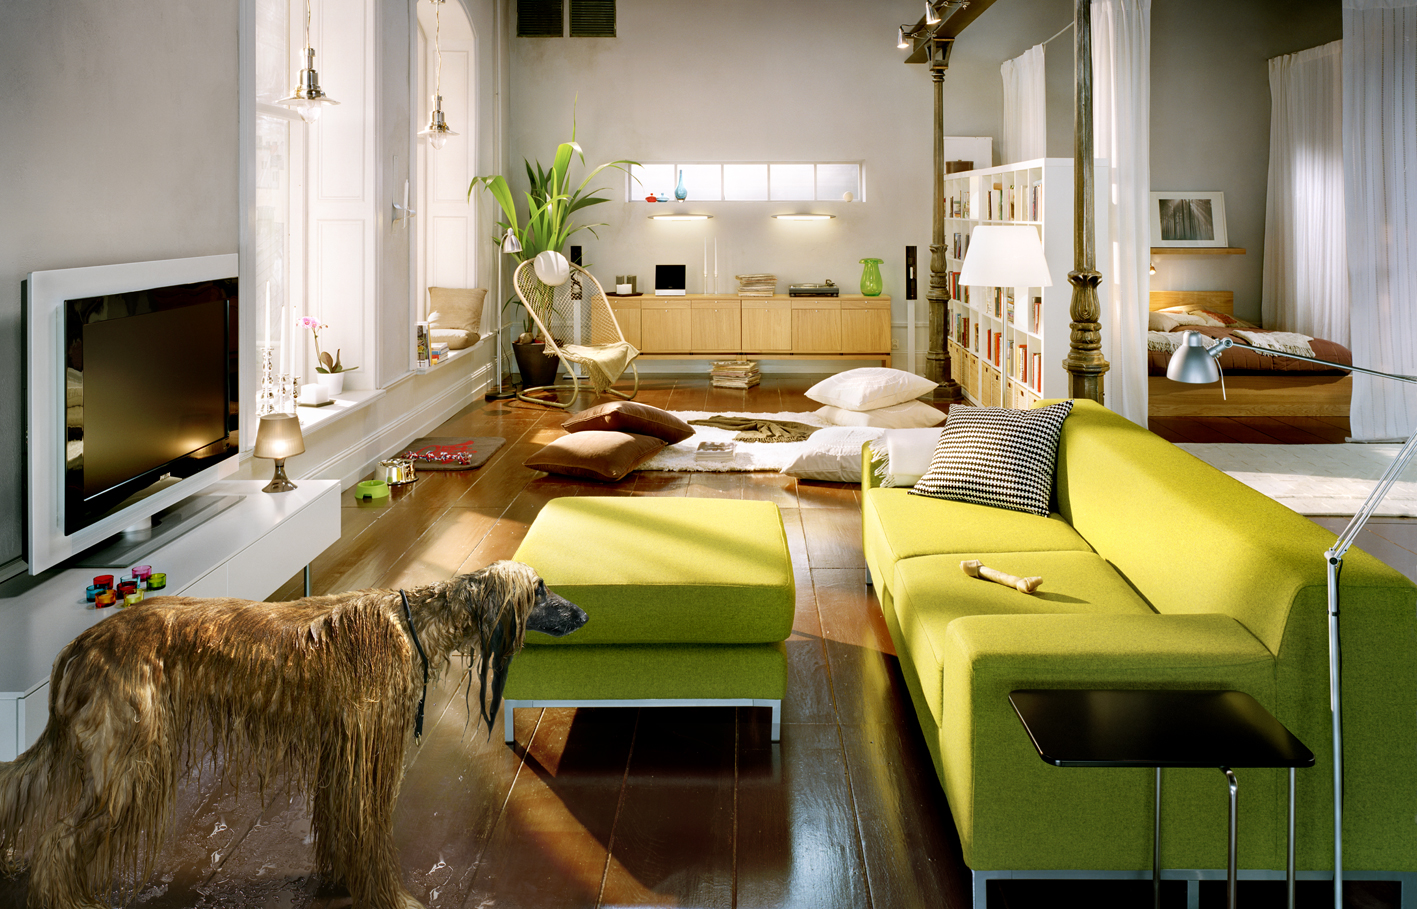 Bedroom Interior Design Ideas Australia